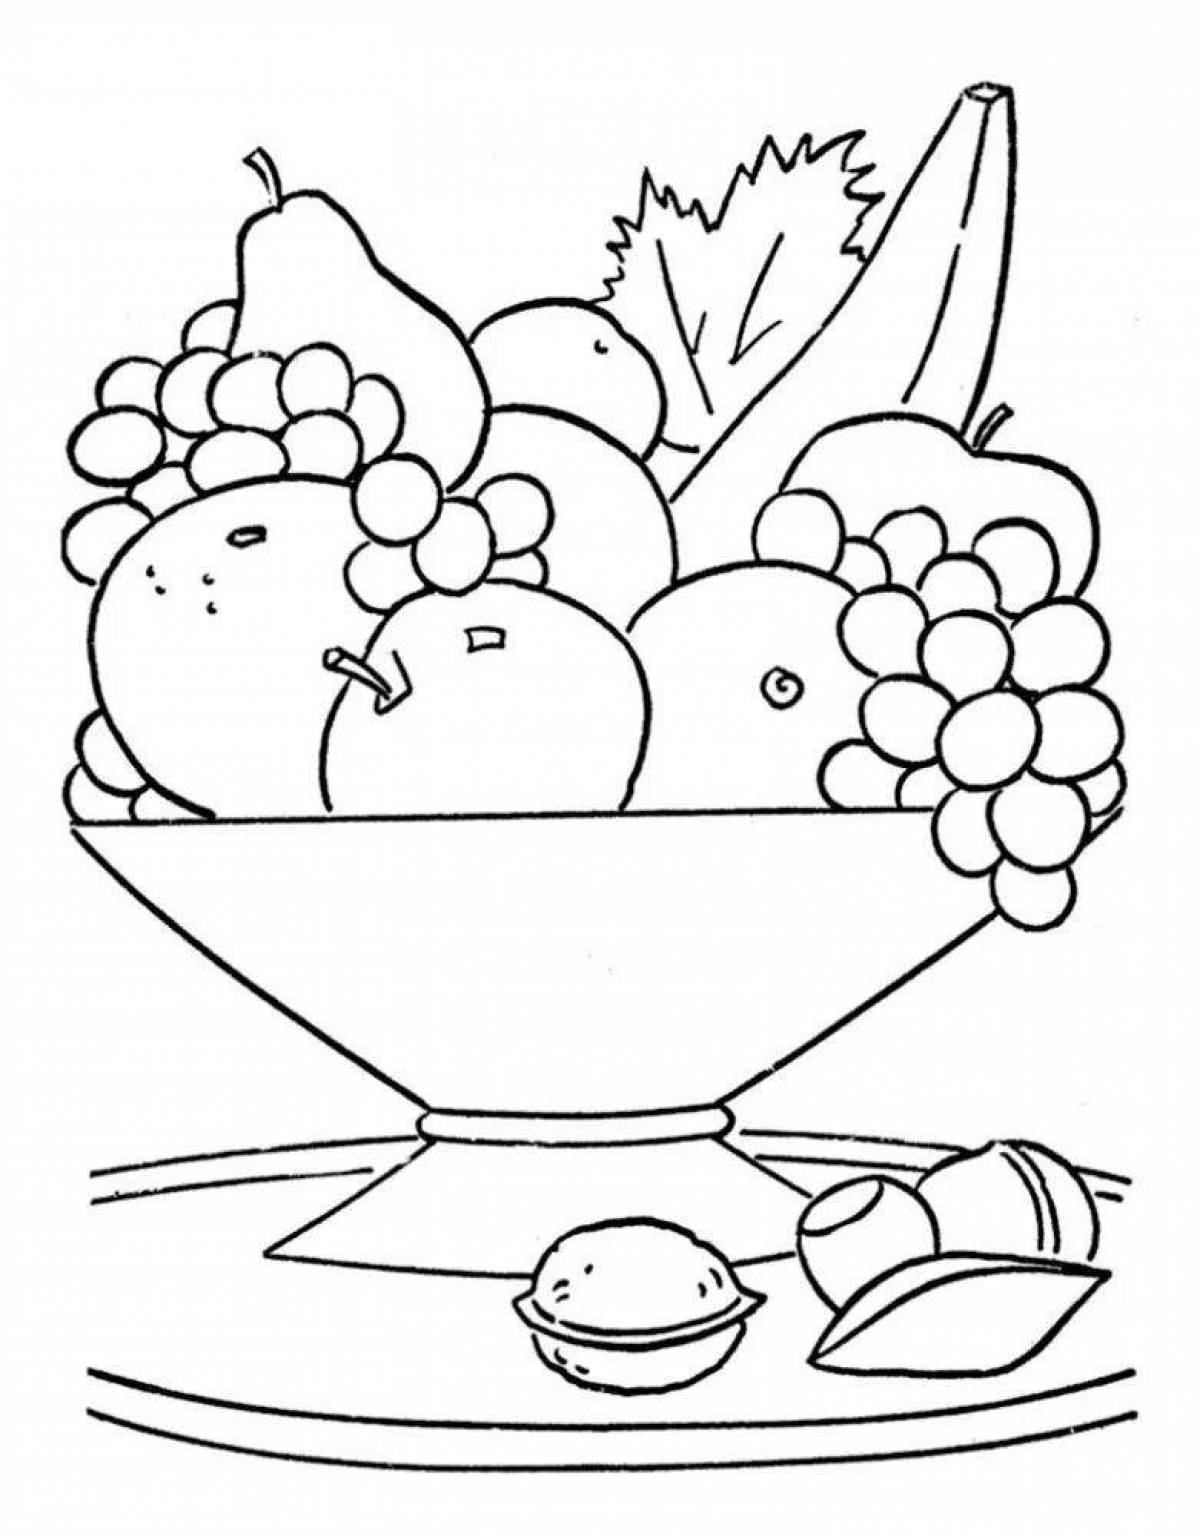 Веселый натюрморт из овощей и фруктов для дошкольников